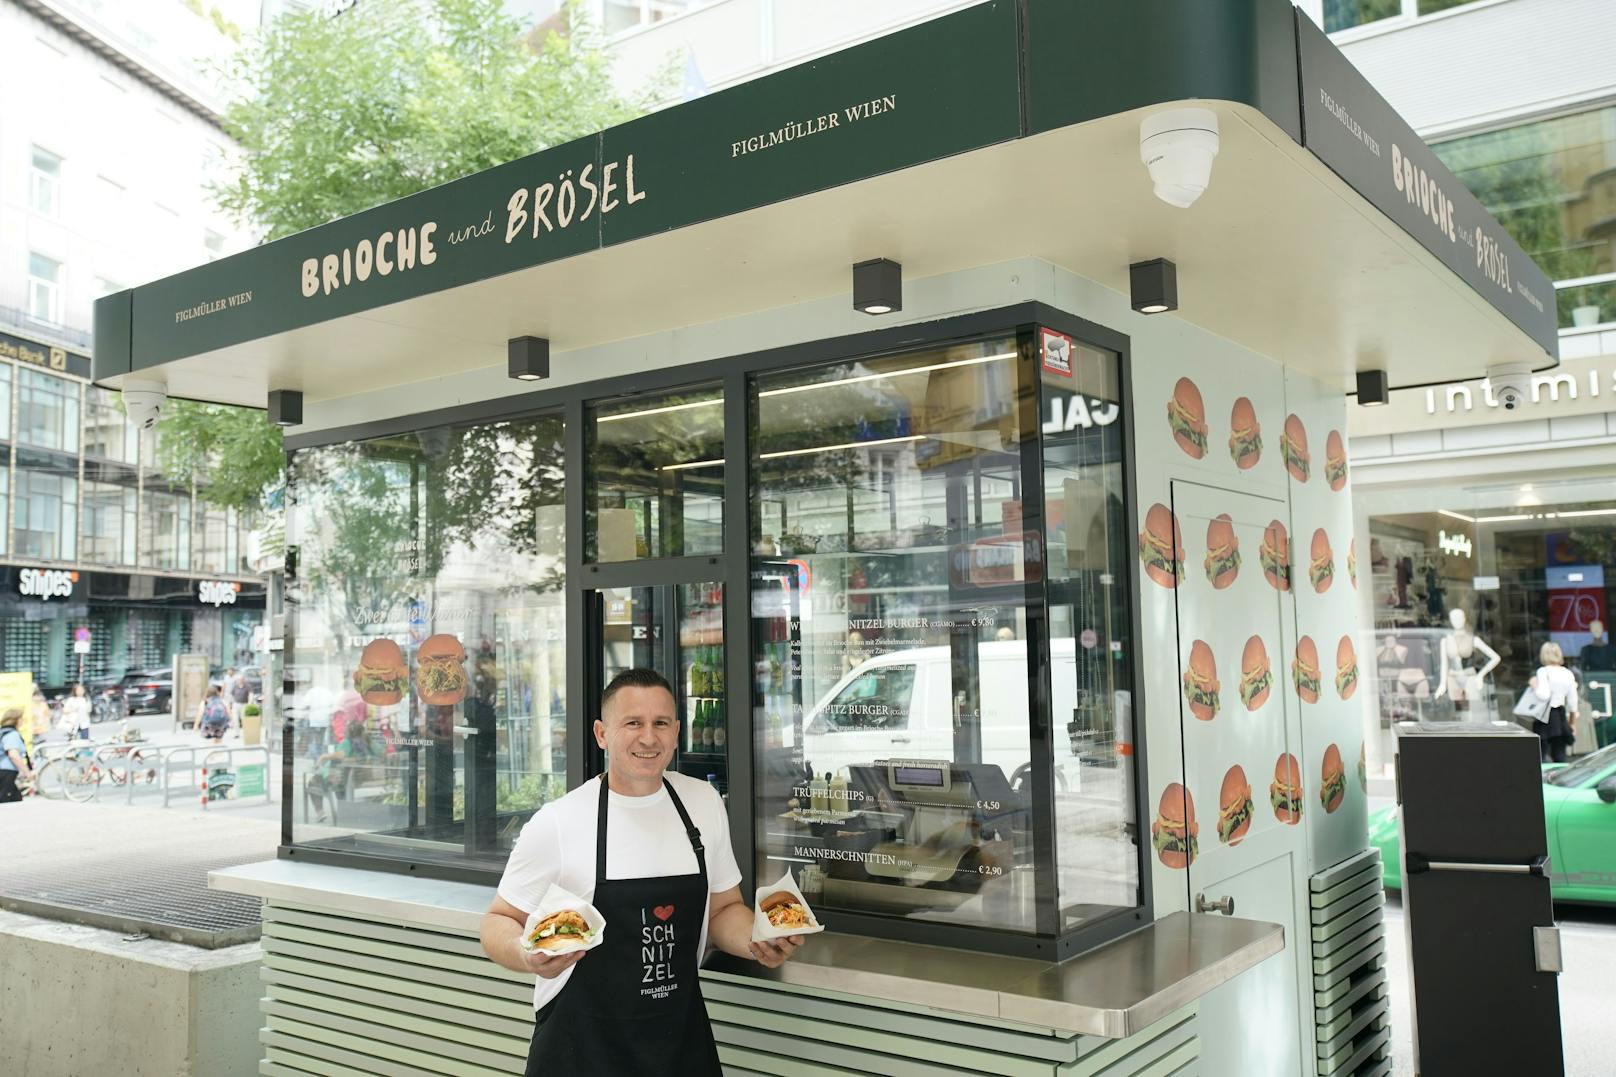 Im "Brioche und Brösel" in der Rotenturmstraße 21 (City) servieren Mitarbeiter des Restaurants Figlmüller neuerdings Tafelspitz- und Kalbsschnitzel-Burger.